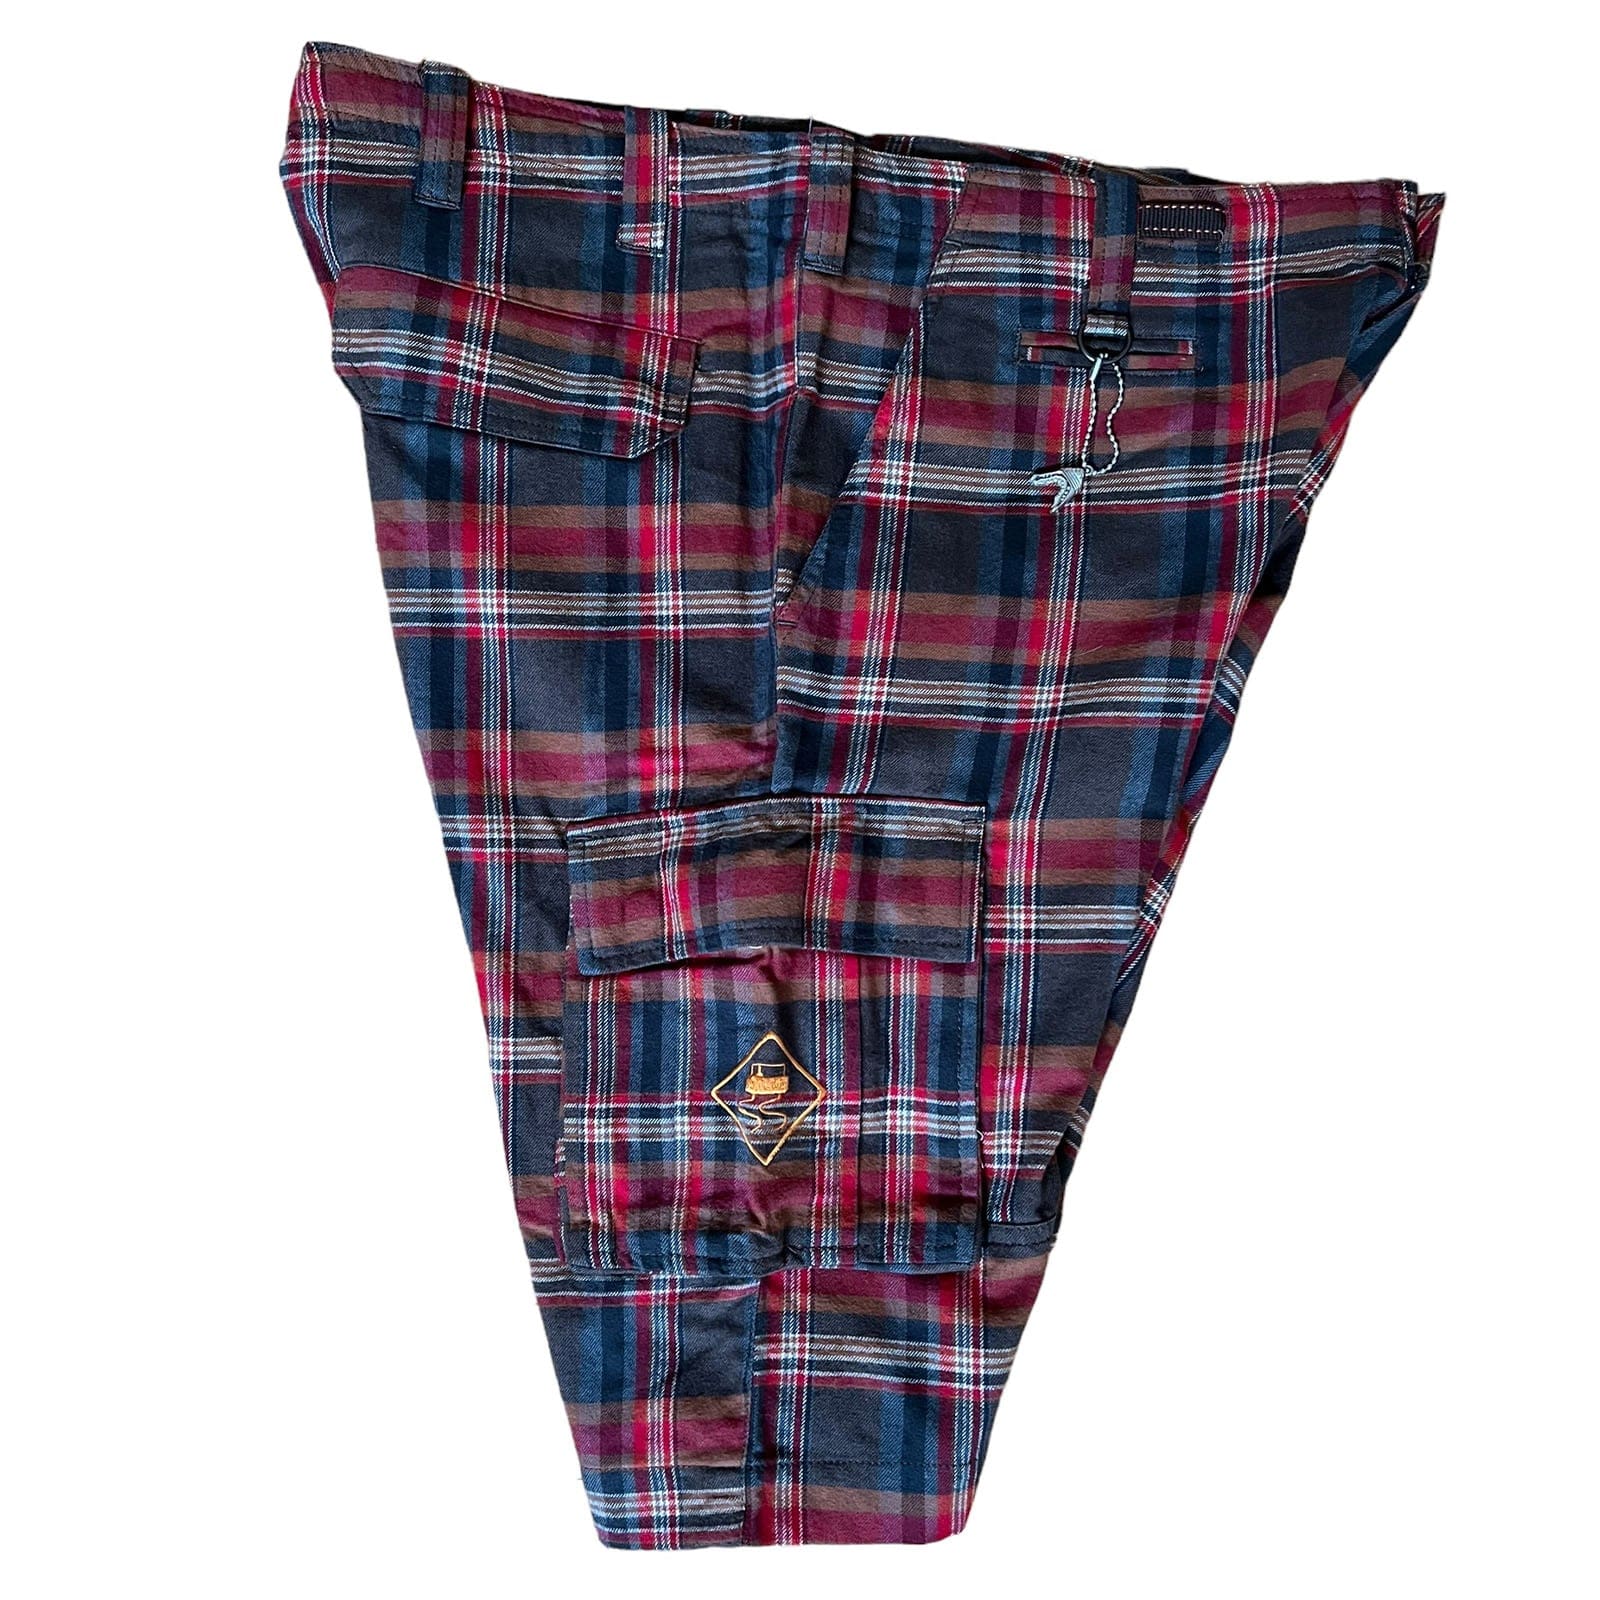 SKIDZ Shorts Super Stash Plaid Flannel Cargo Shorts - Red & Brown